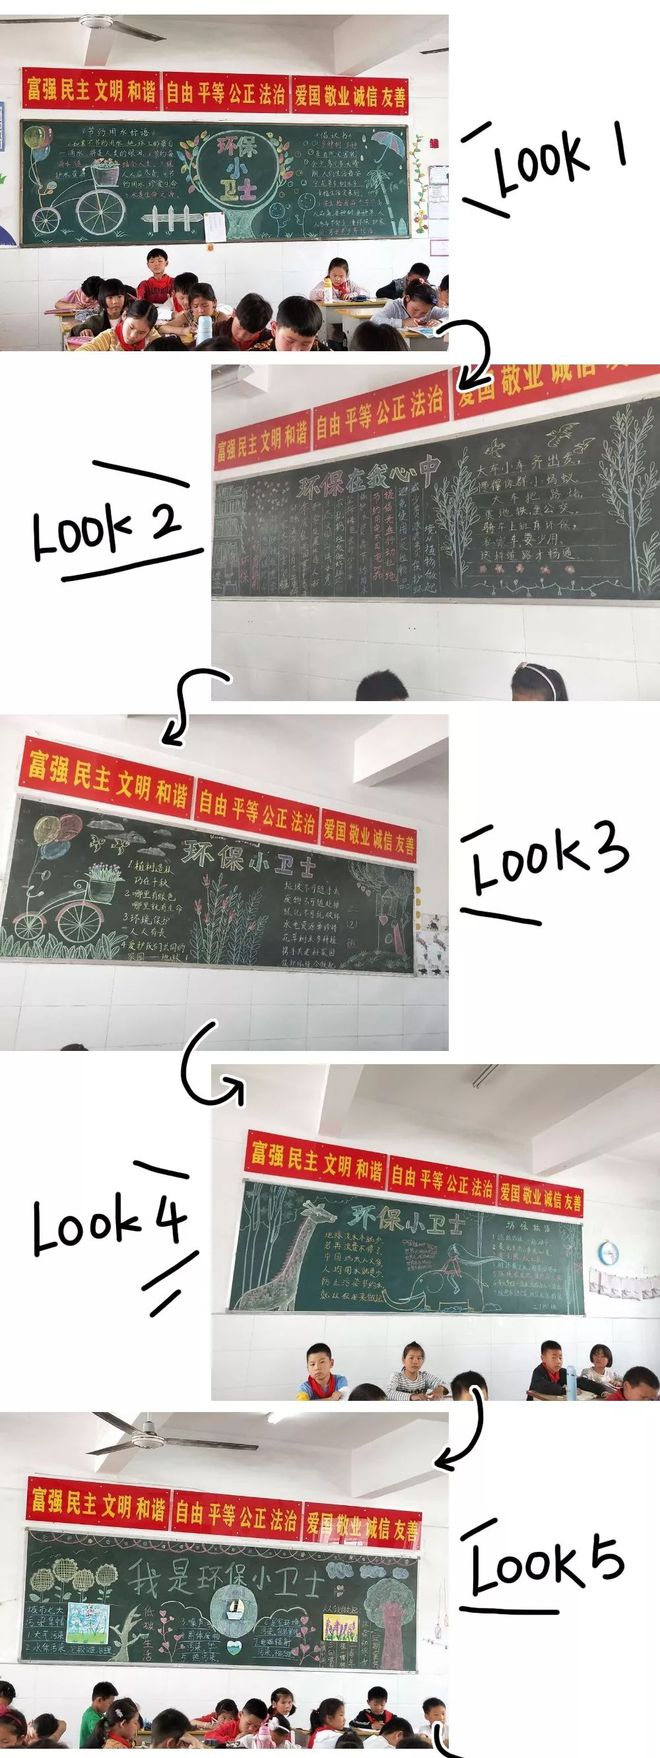 3777金沙娱场城淮滨县实验小学开展班级文化墙、黑板报展示活动(图3)